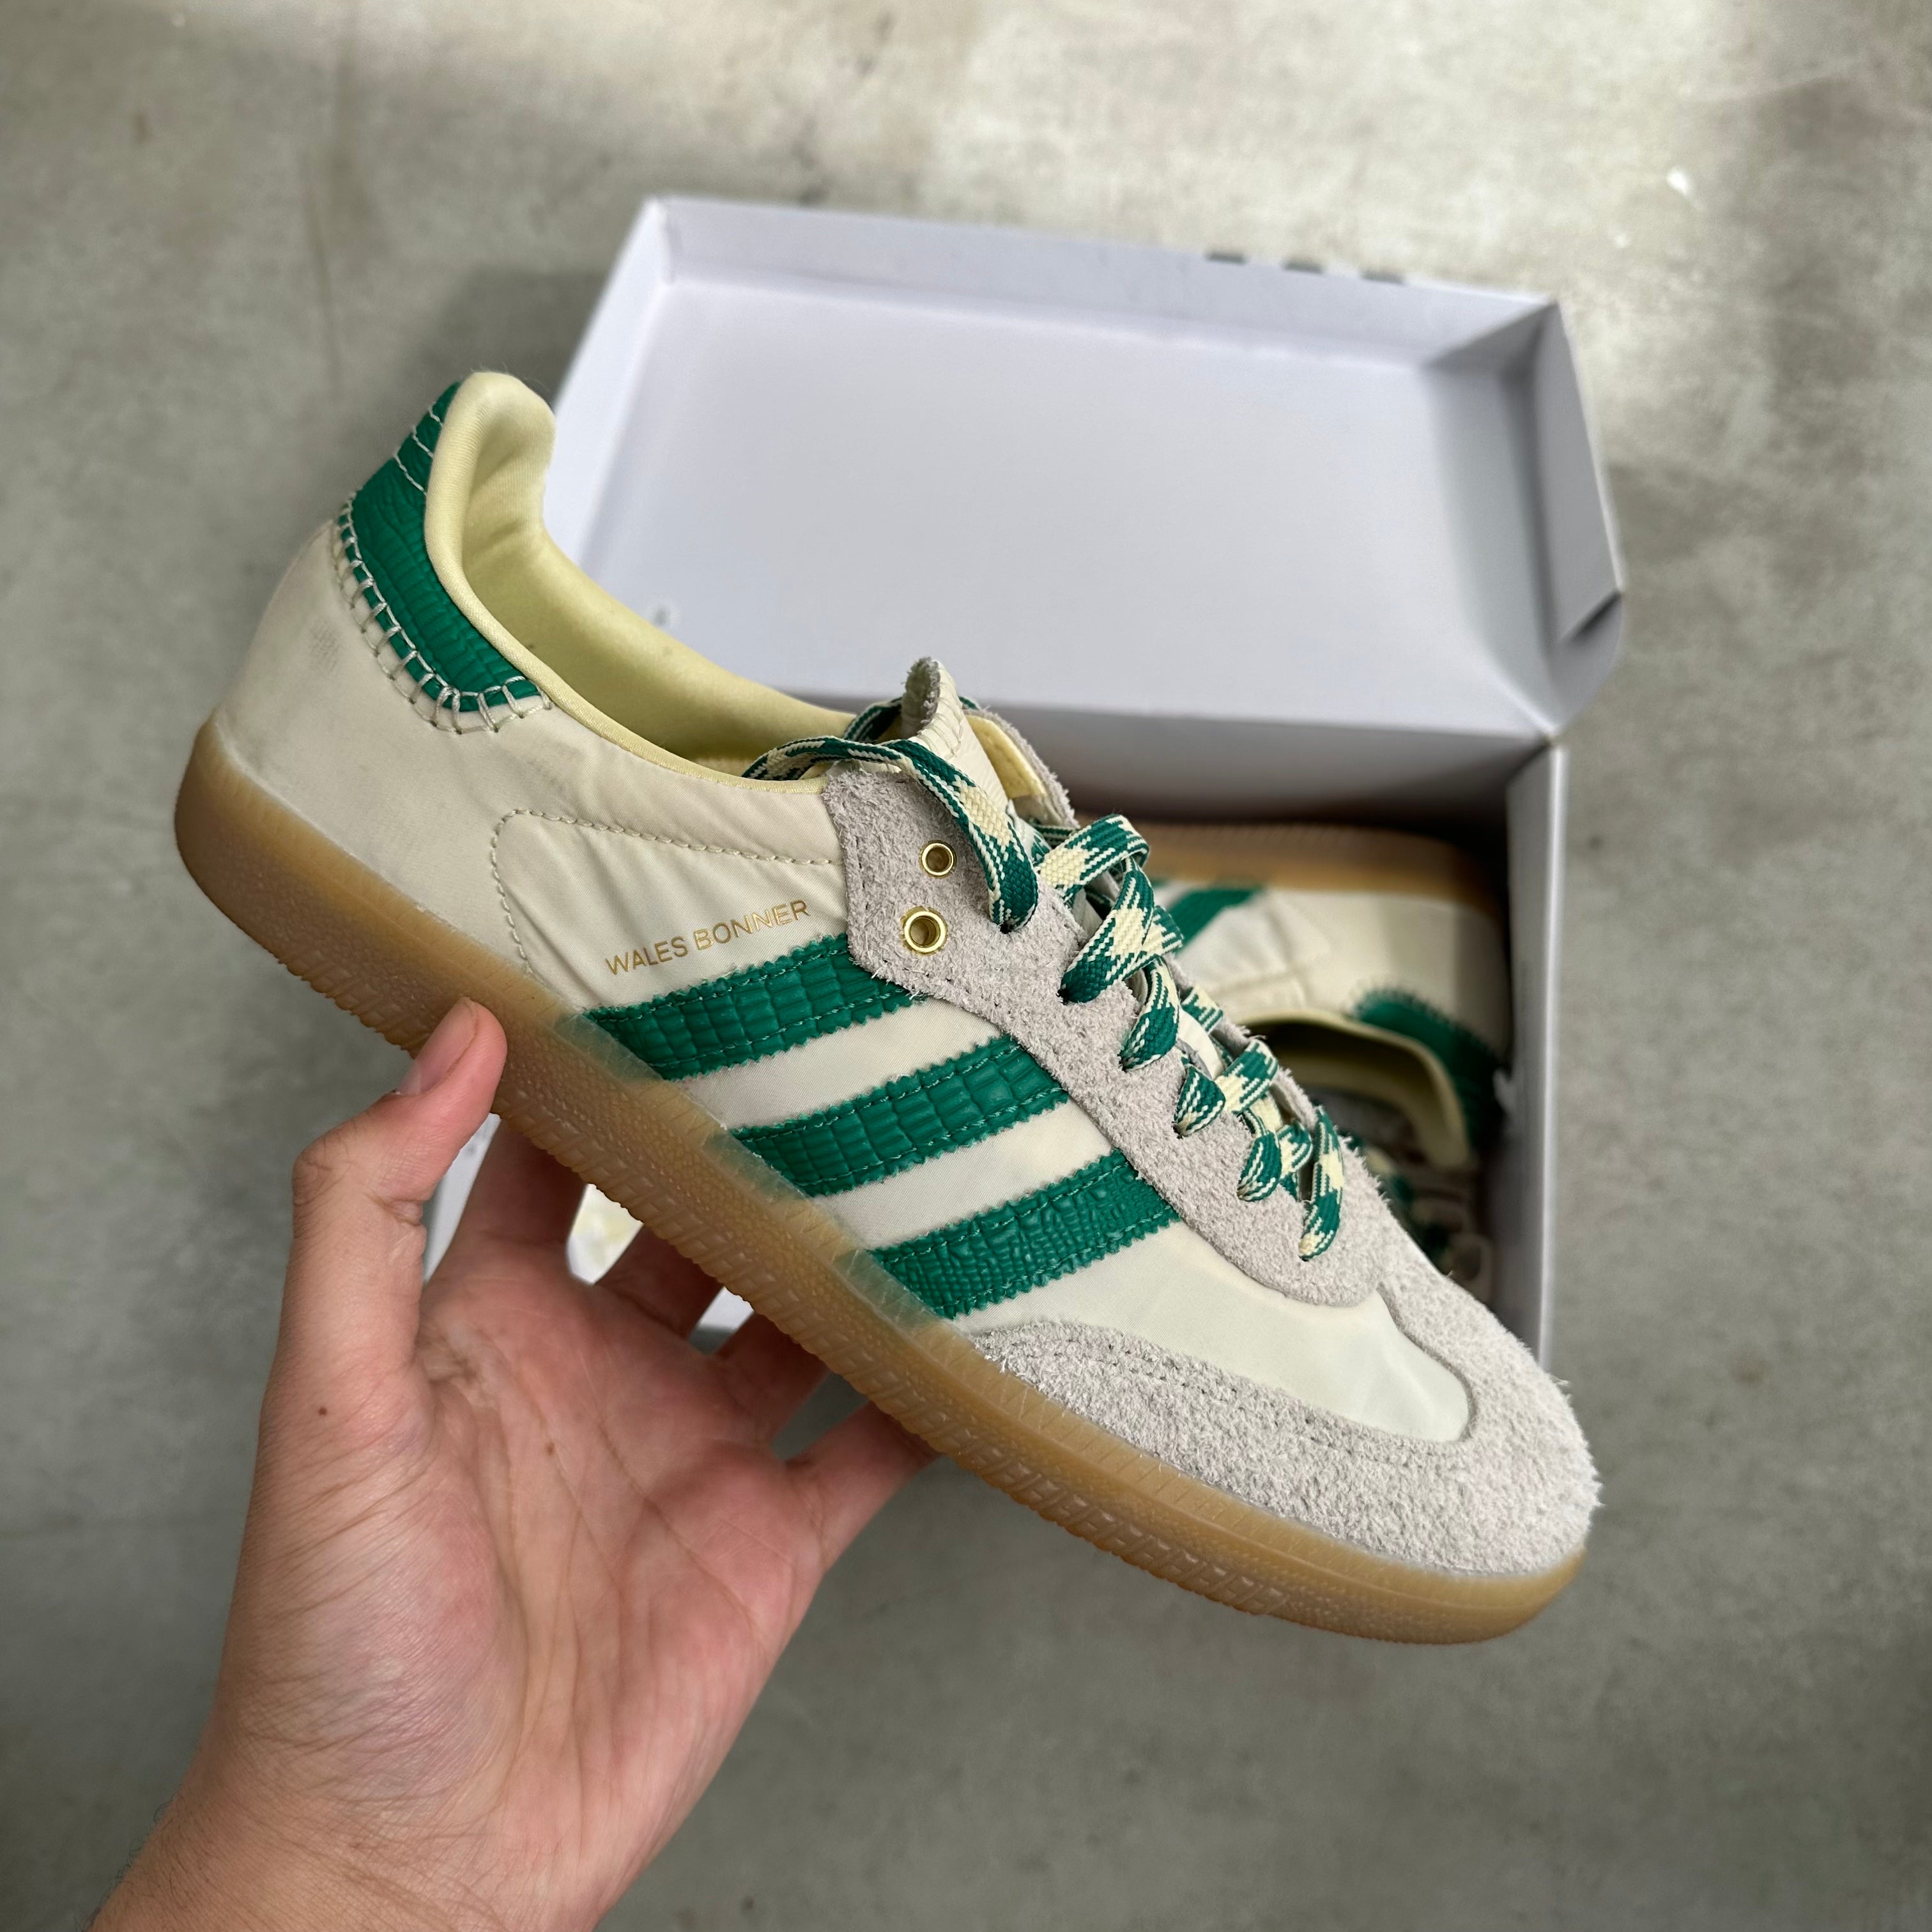 Adidas Samba Wales Bonner Cream Green US9 – Curated by Charbel